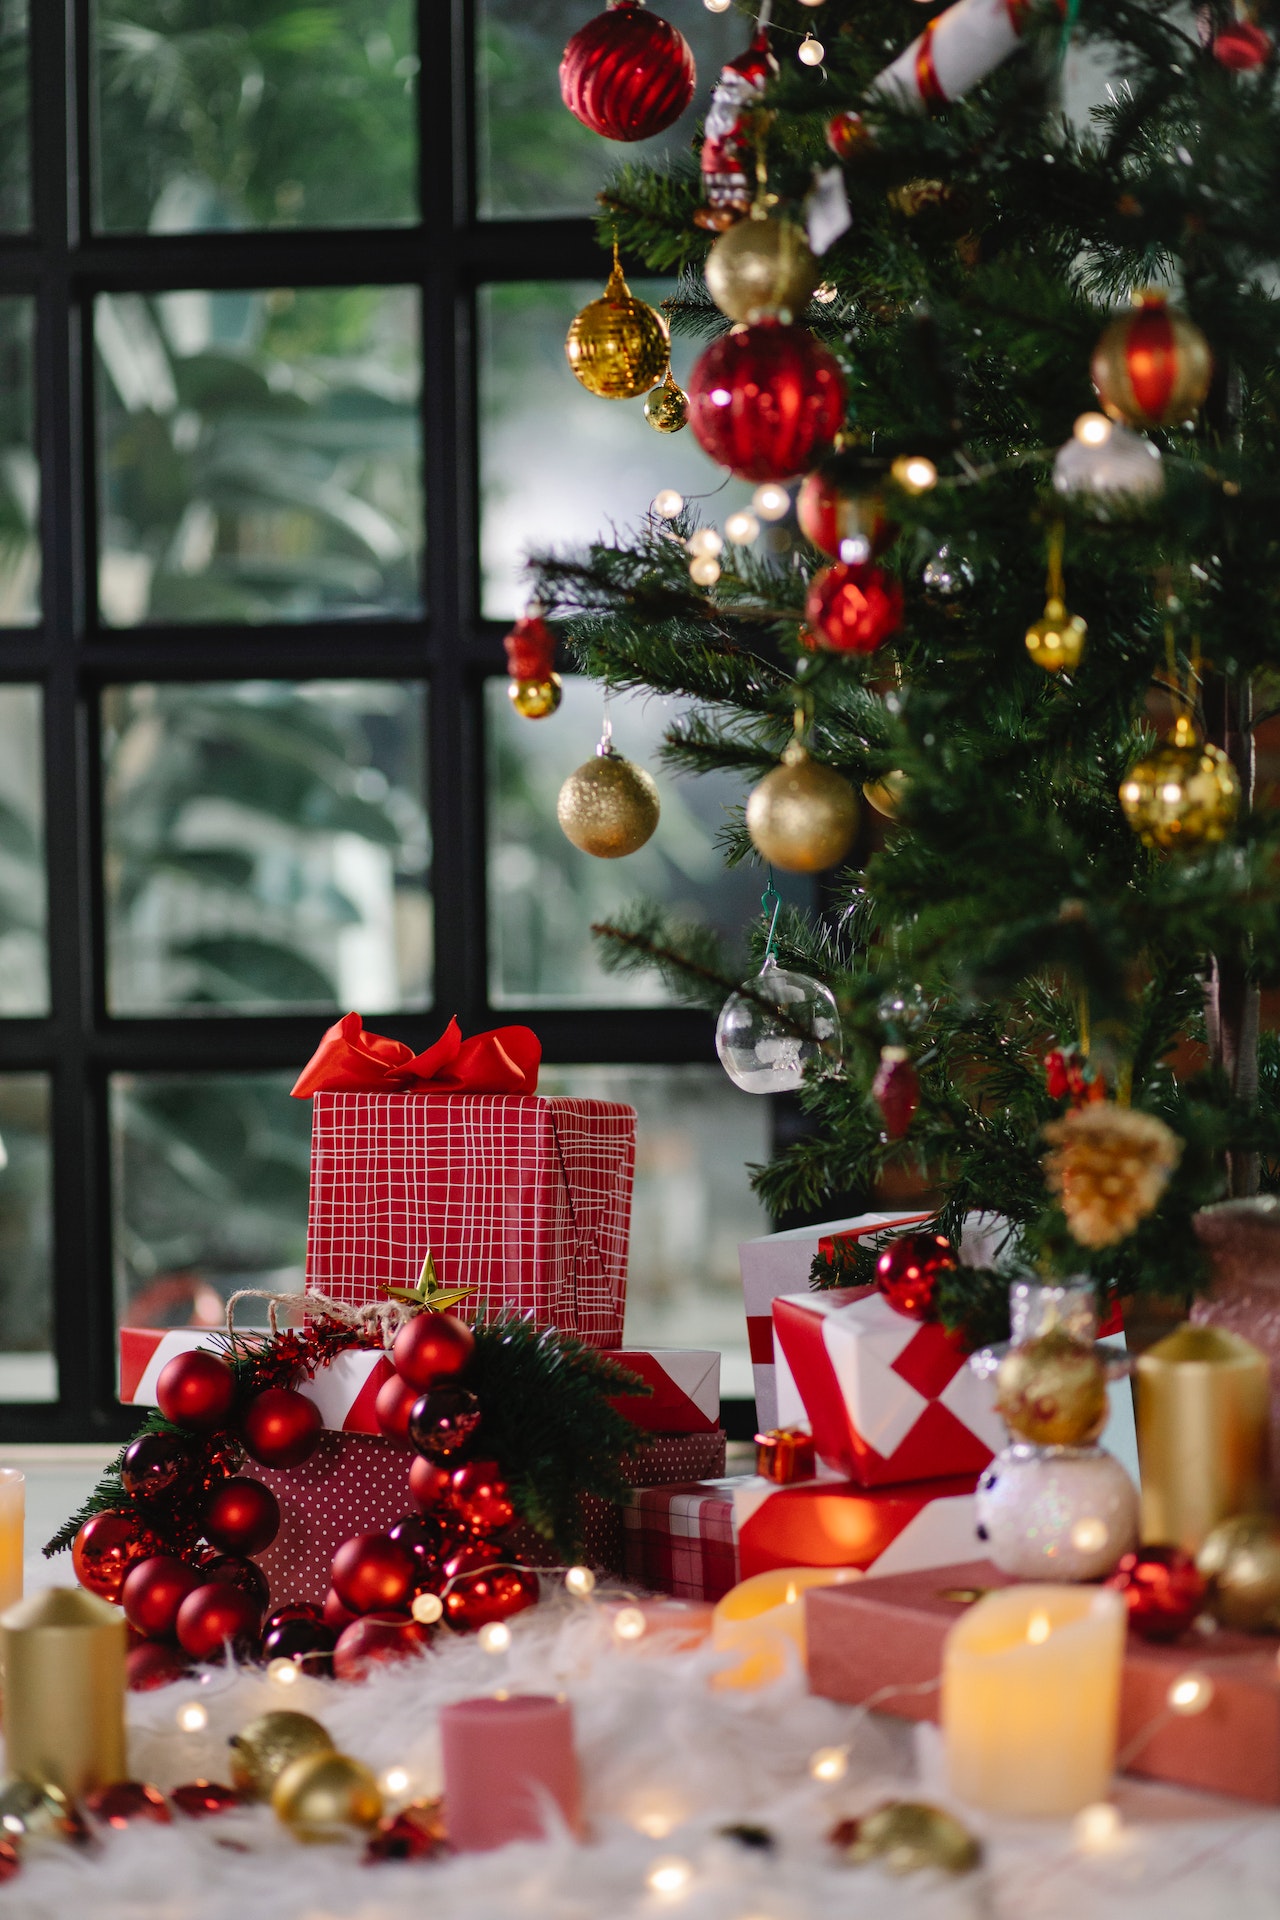 Comment enlever les décorations de Noël sur les vitres ?